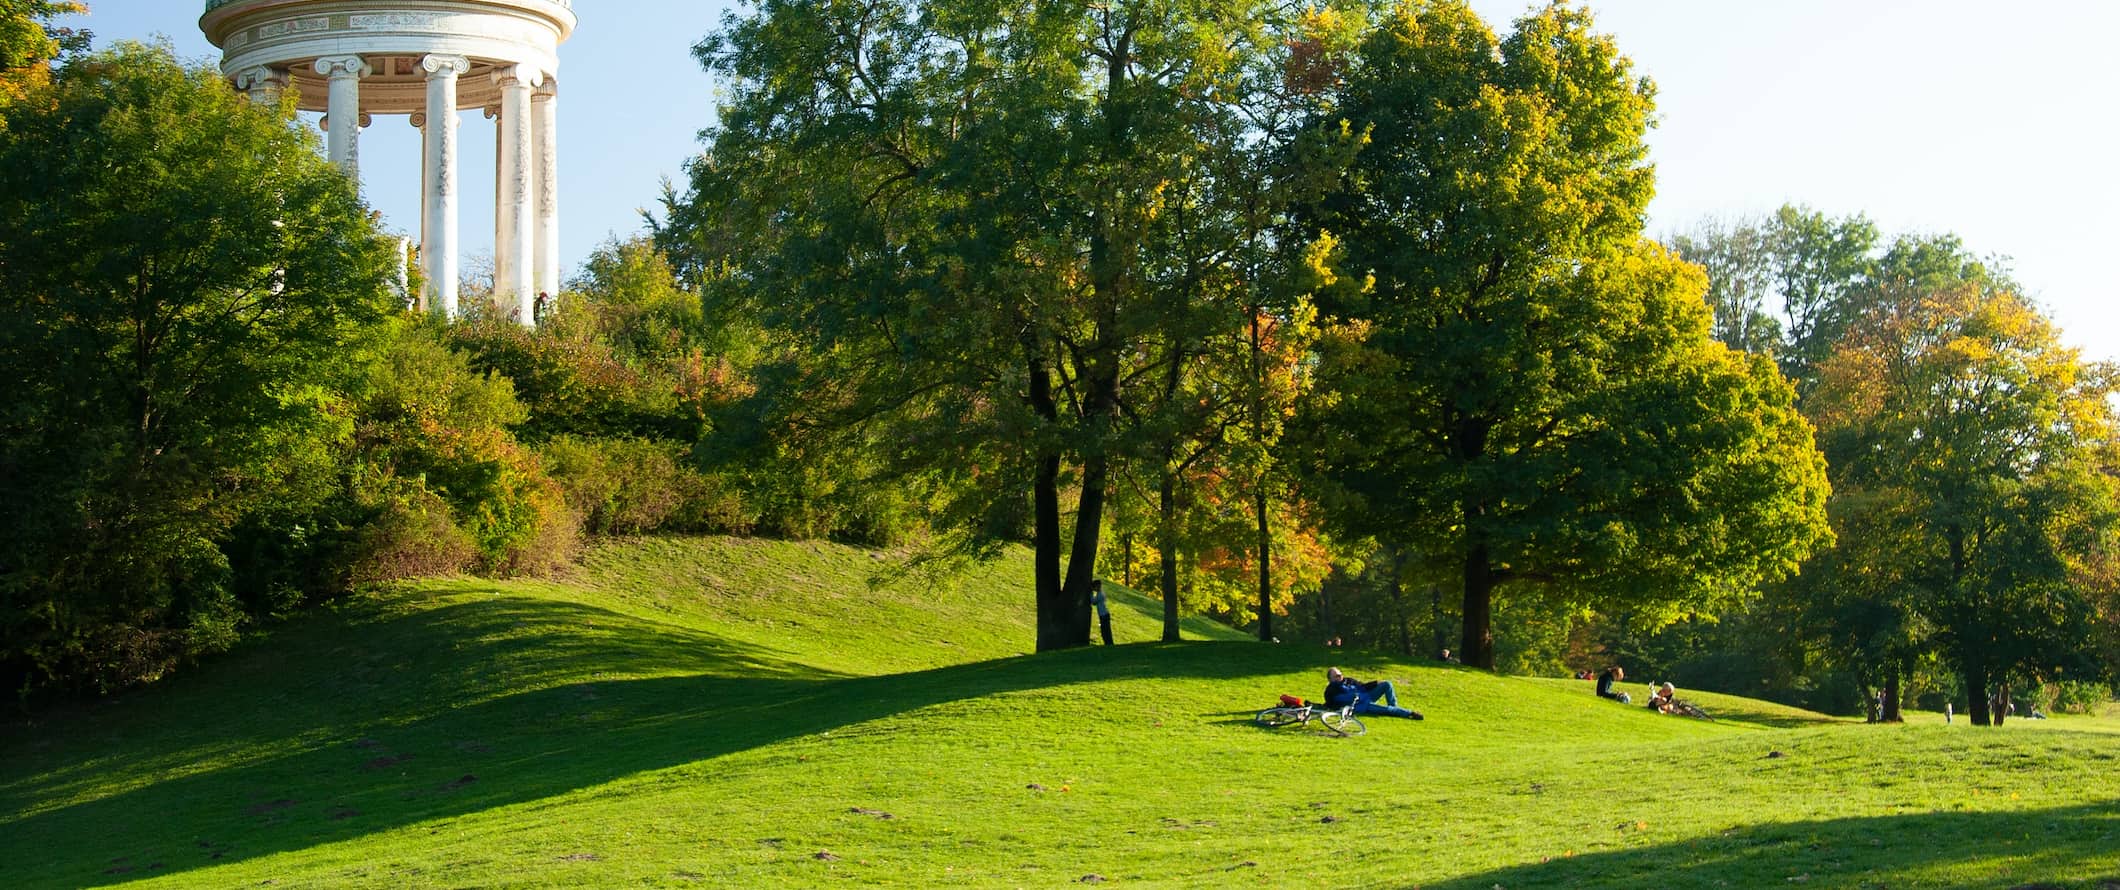 Um magnífico campo verde com moradores locais descansando no verão em Munique, Alemanha